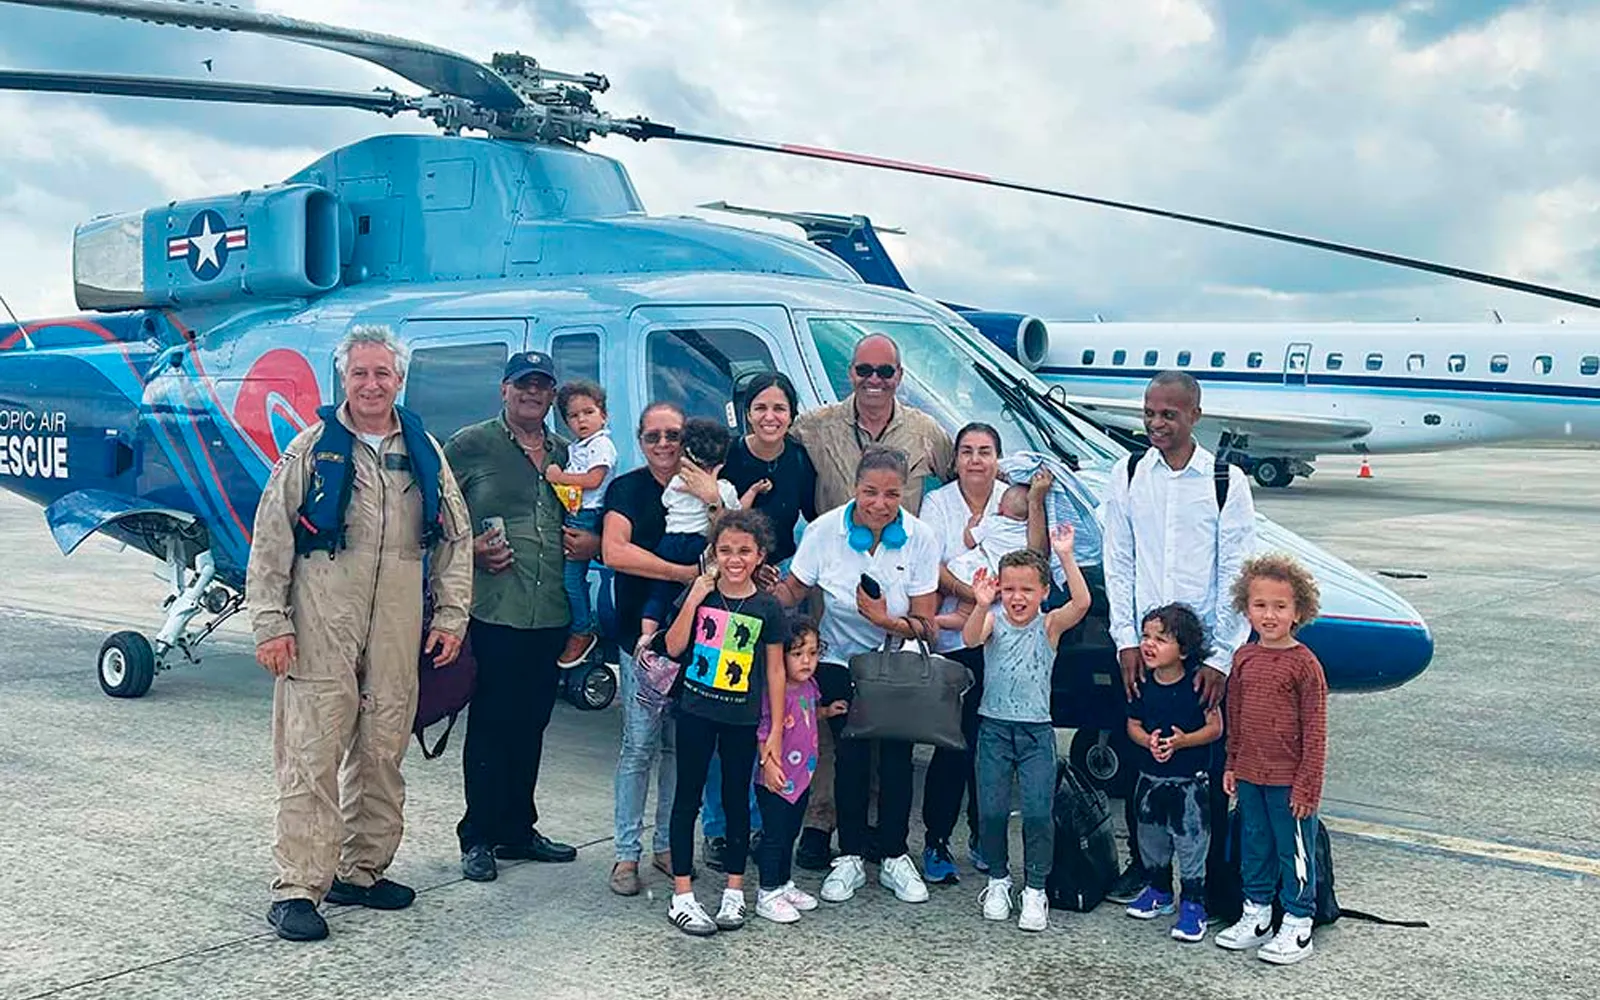 Matos y Marinello se reúnen en la pista del aeropuerto internacional de Cabo Haitiano con los 14 ciudadanos estadounidenses que rescataron durante su segundo viaje de misión el 20 de marzo.?w=200&h=150